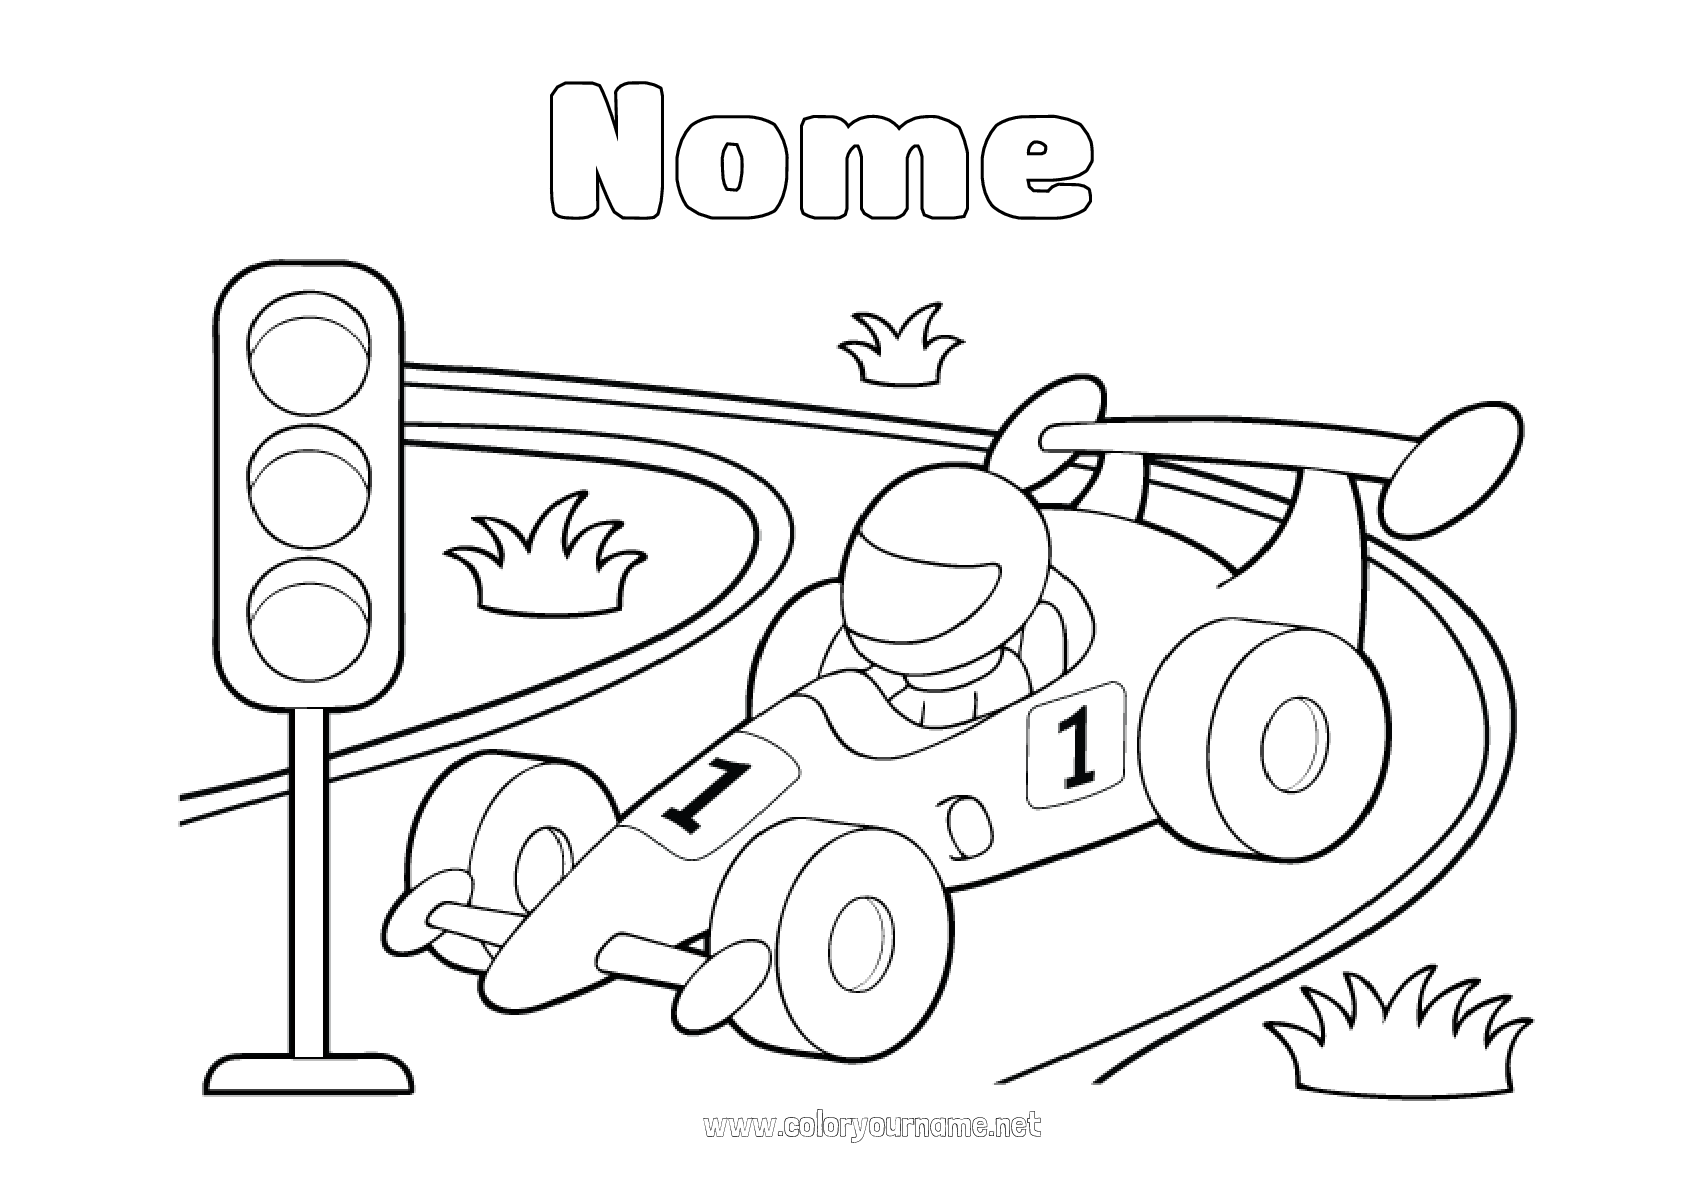 Desenhos para colorir de desenho de uma moto de corrida com seu piloto para  colorir 